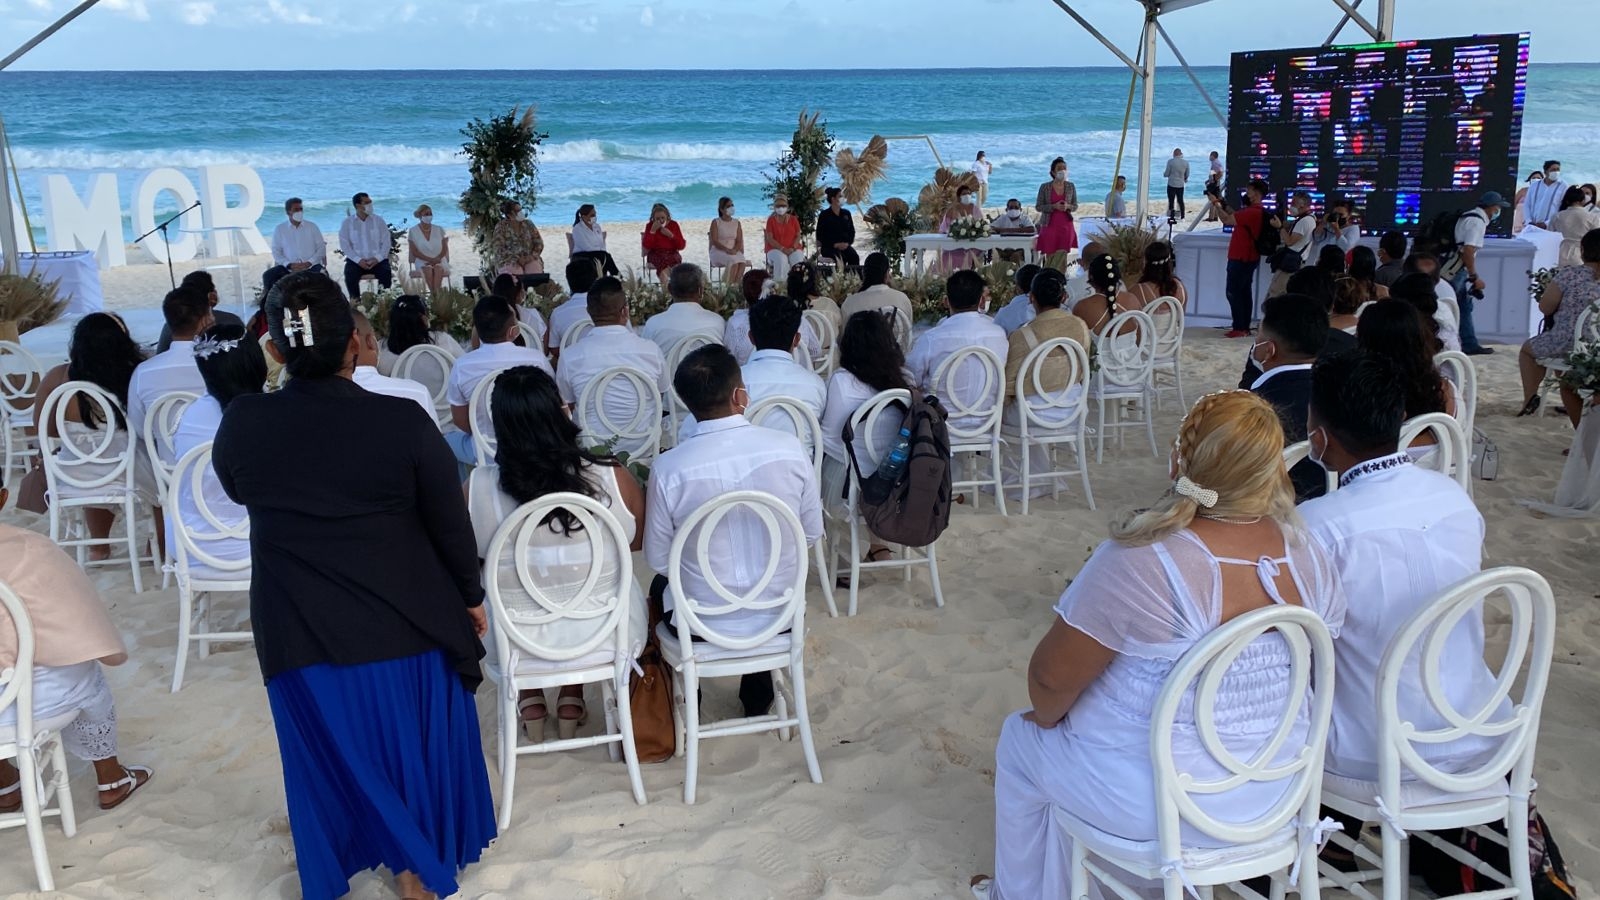 Parejas celebran bodas colectivas frente al mar en Cancún: VIDEO